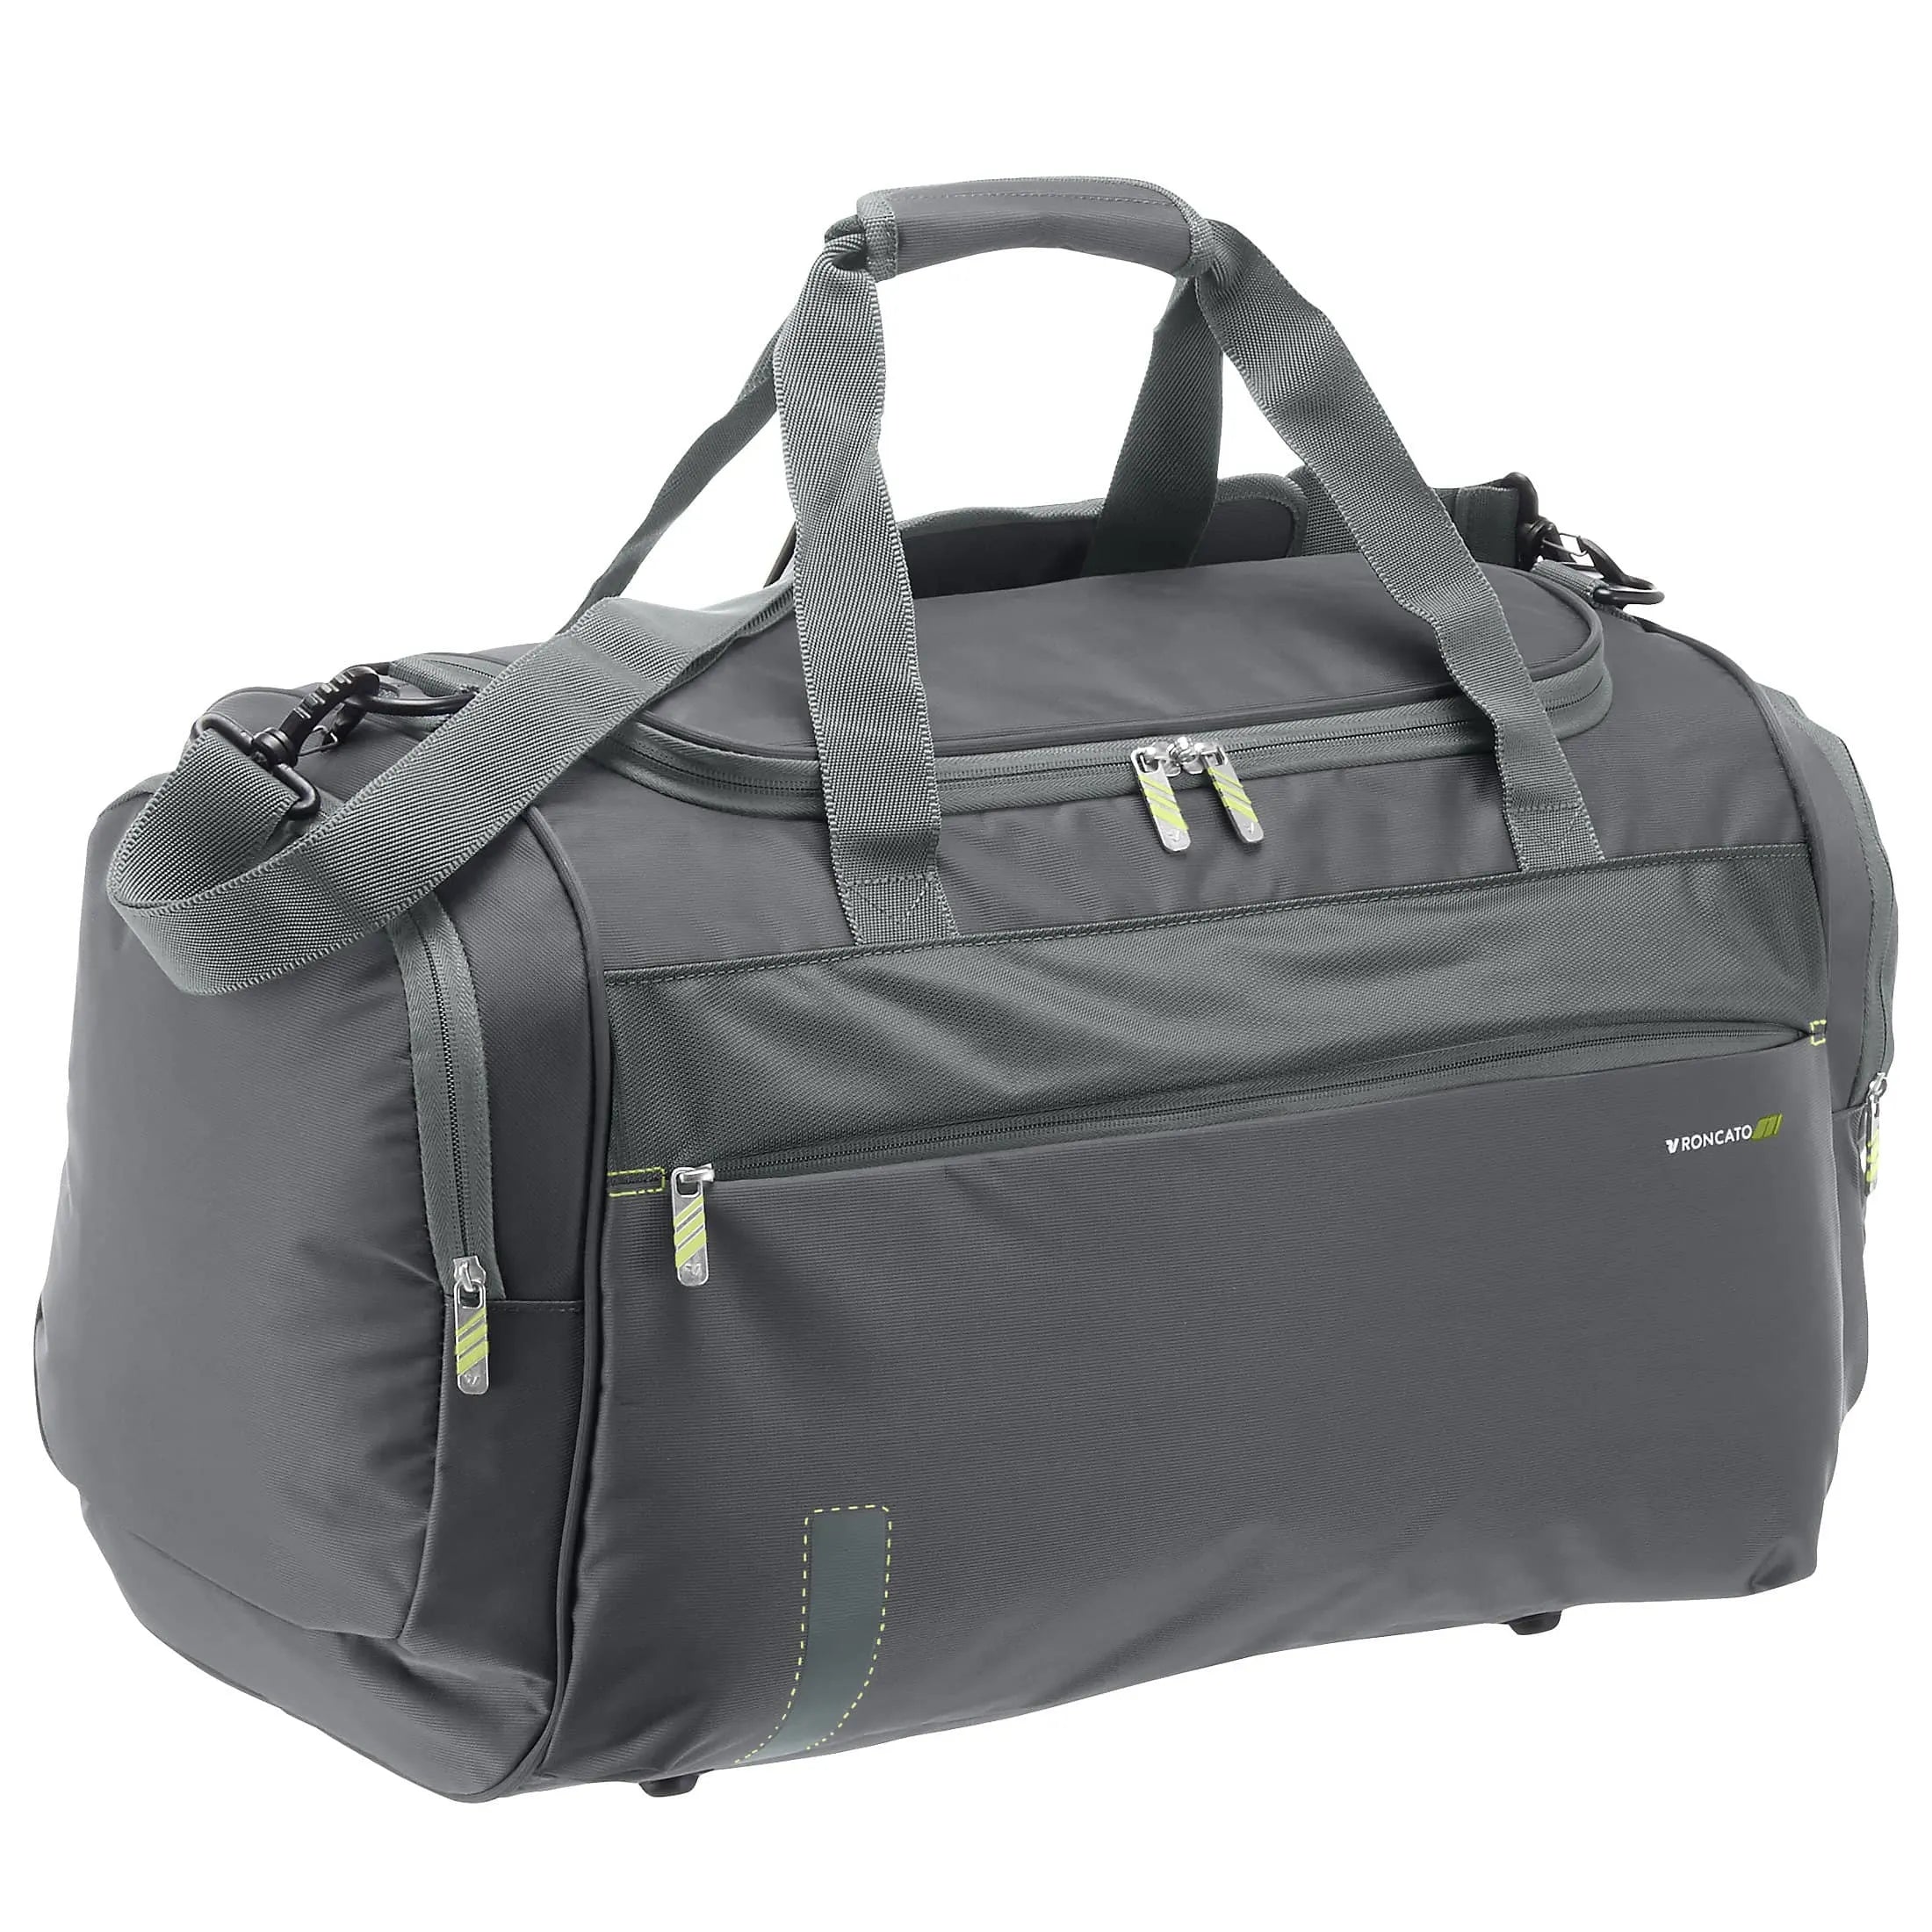 Roncato Speed travel bag 55 cm - antracite